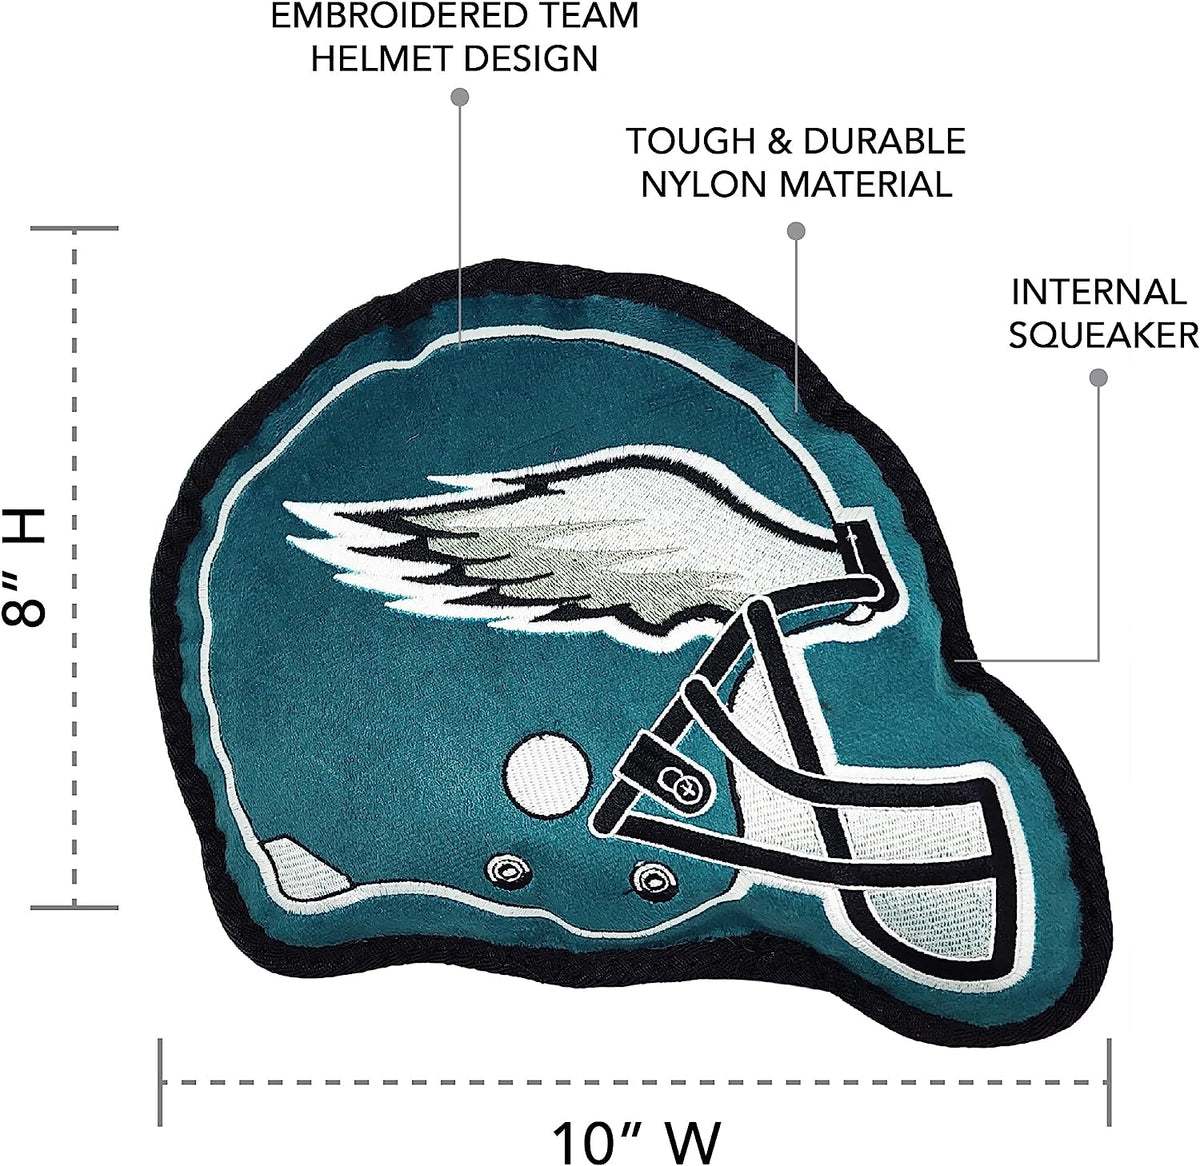 Philadelphia Eagles Helmet Tough Toys